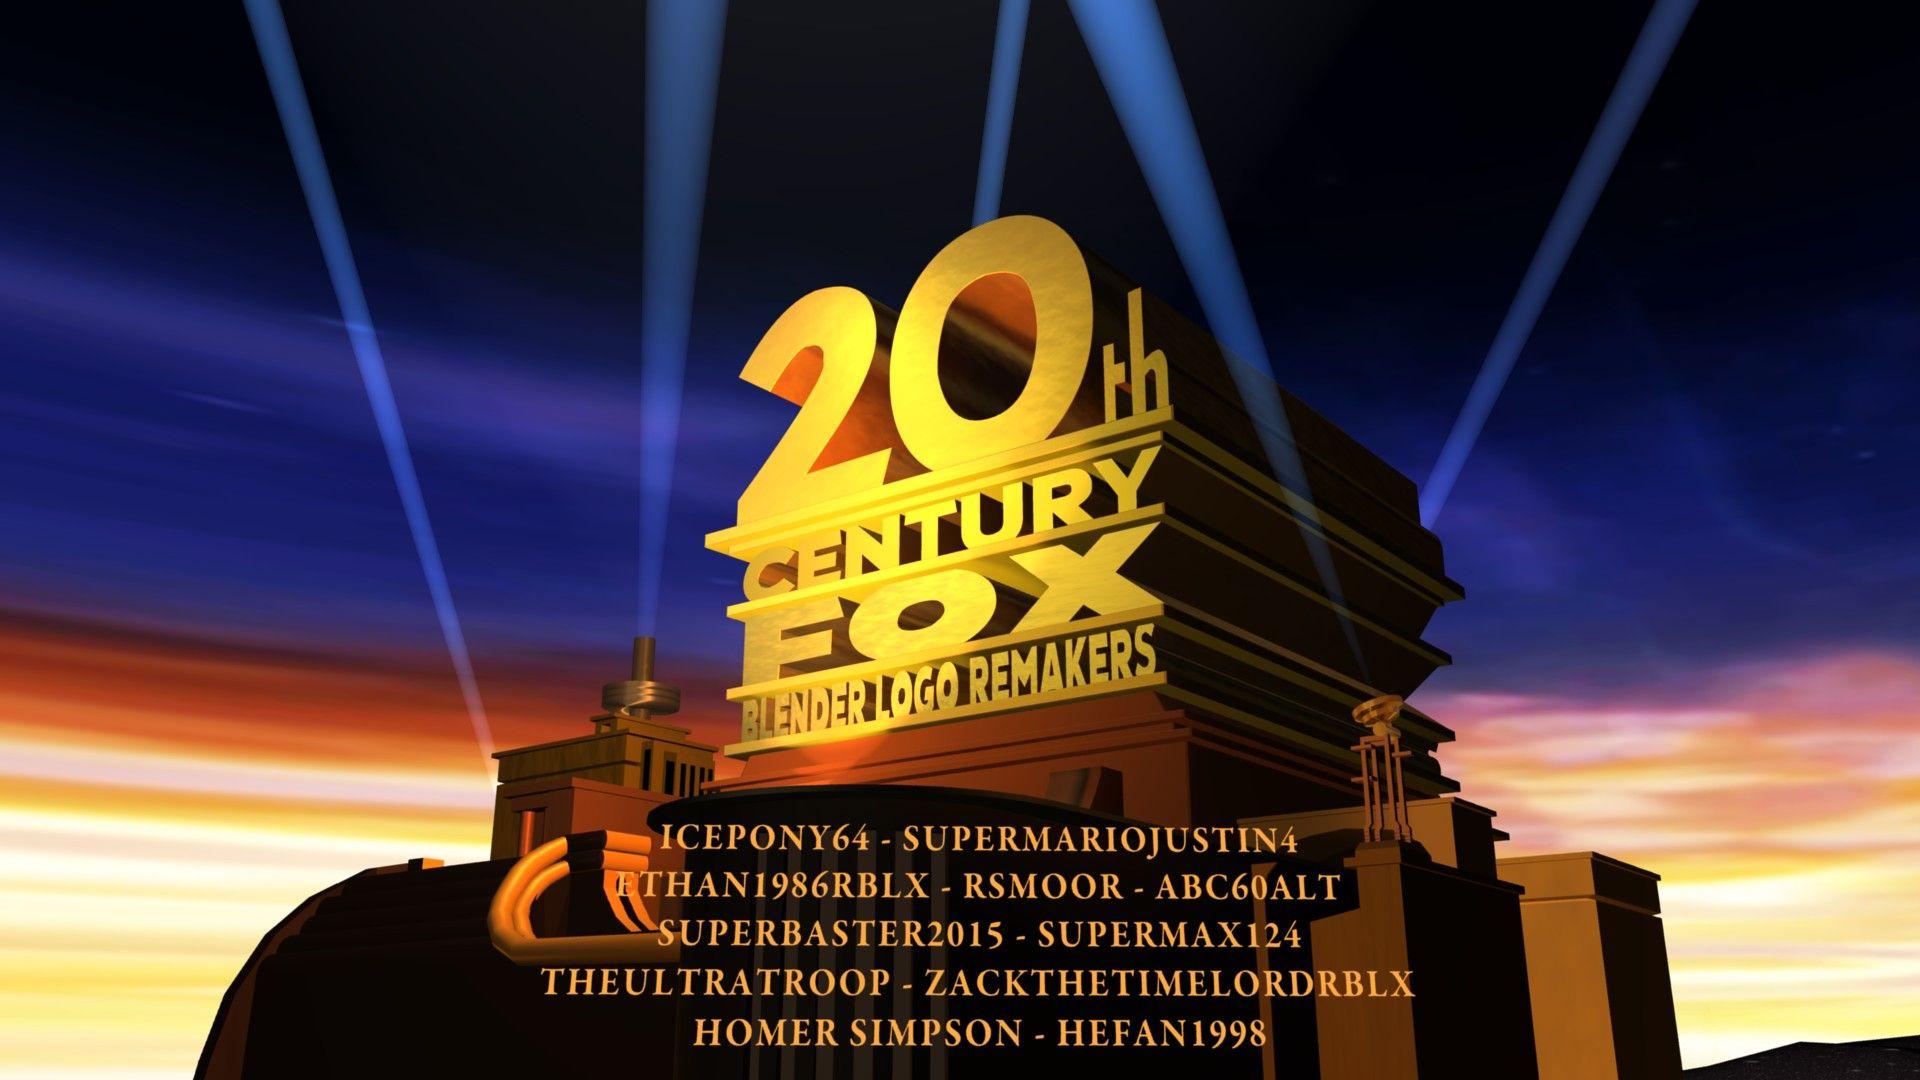 20th Century Fox Blender Logo - Pictures of 20th Century Fox Logo Blender - kidskunst.info